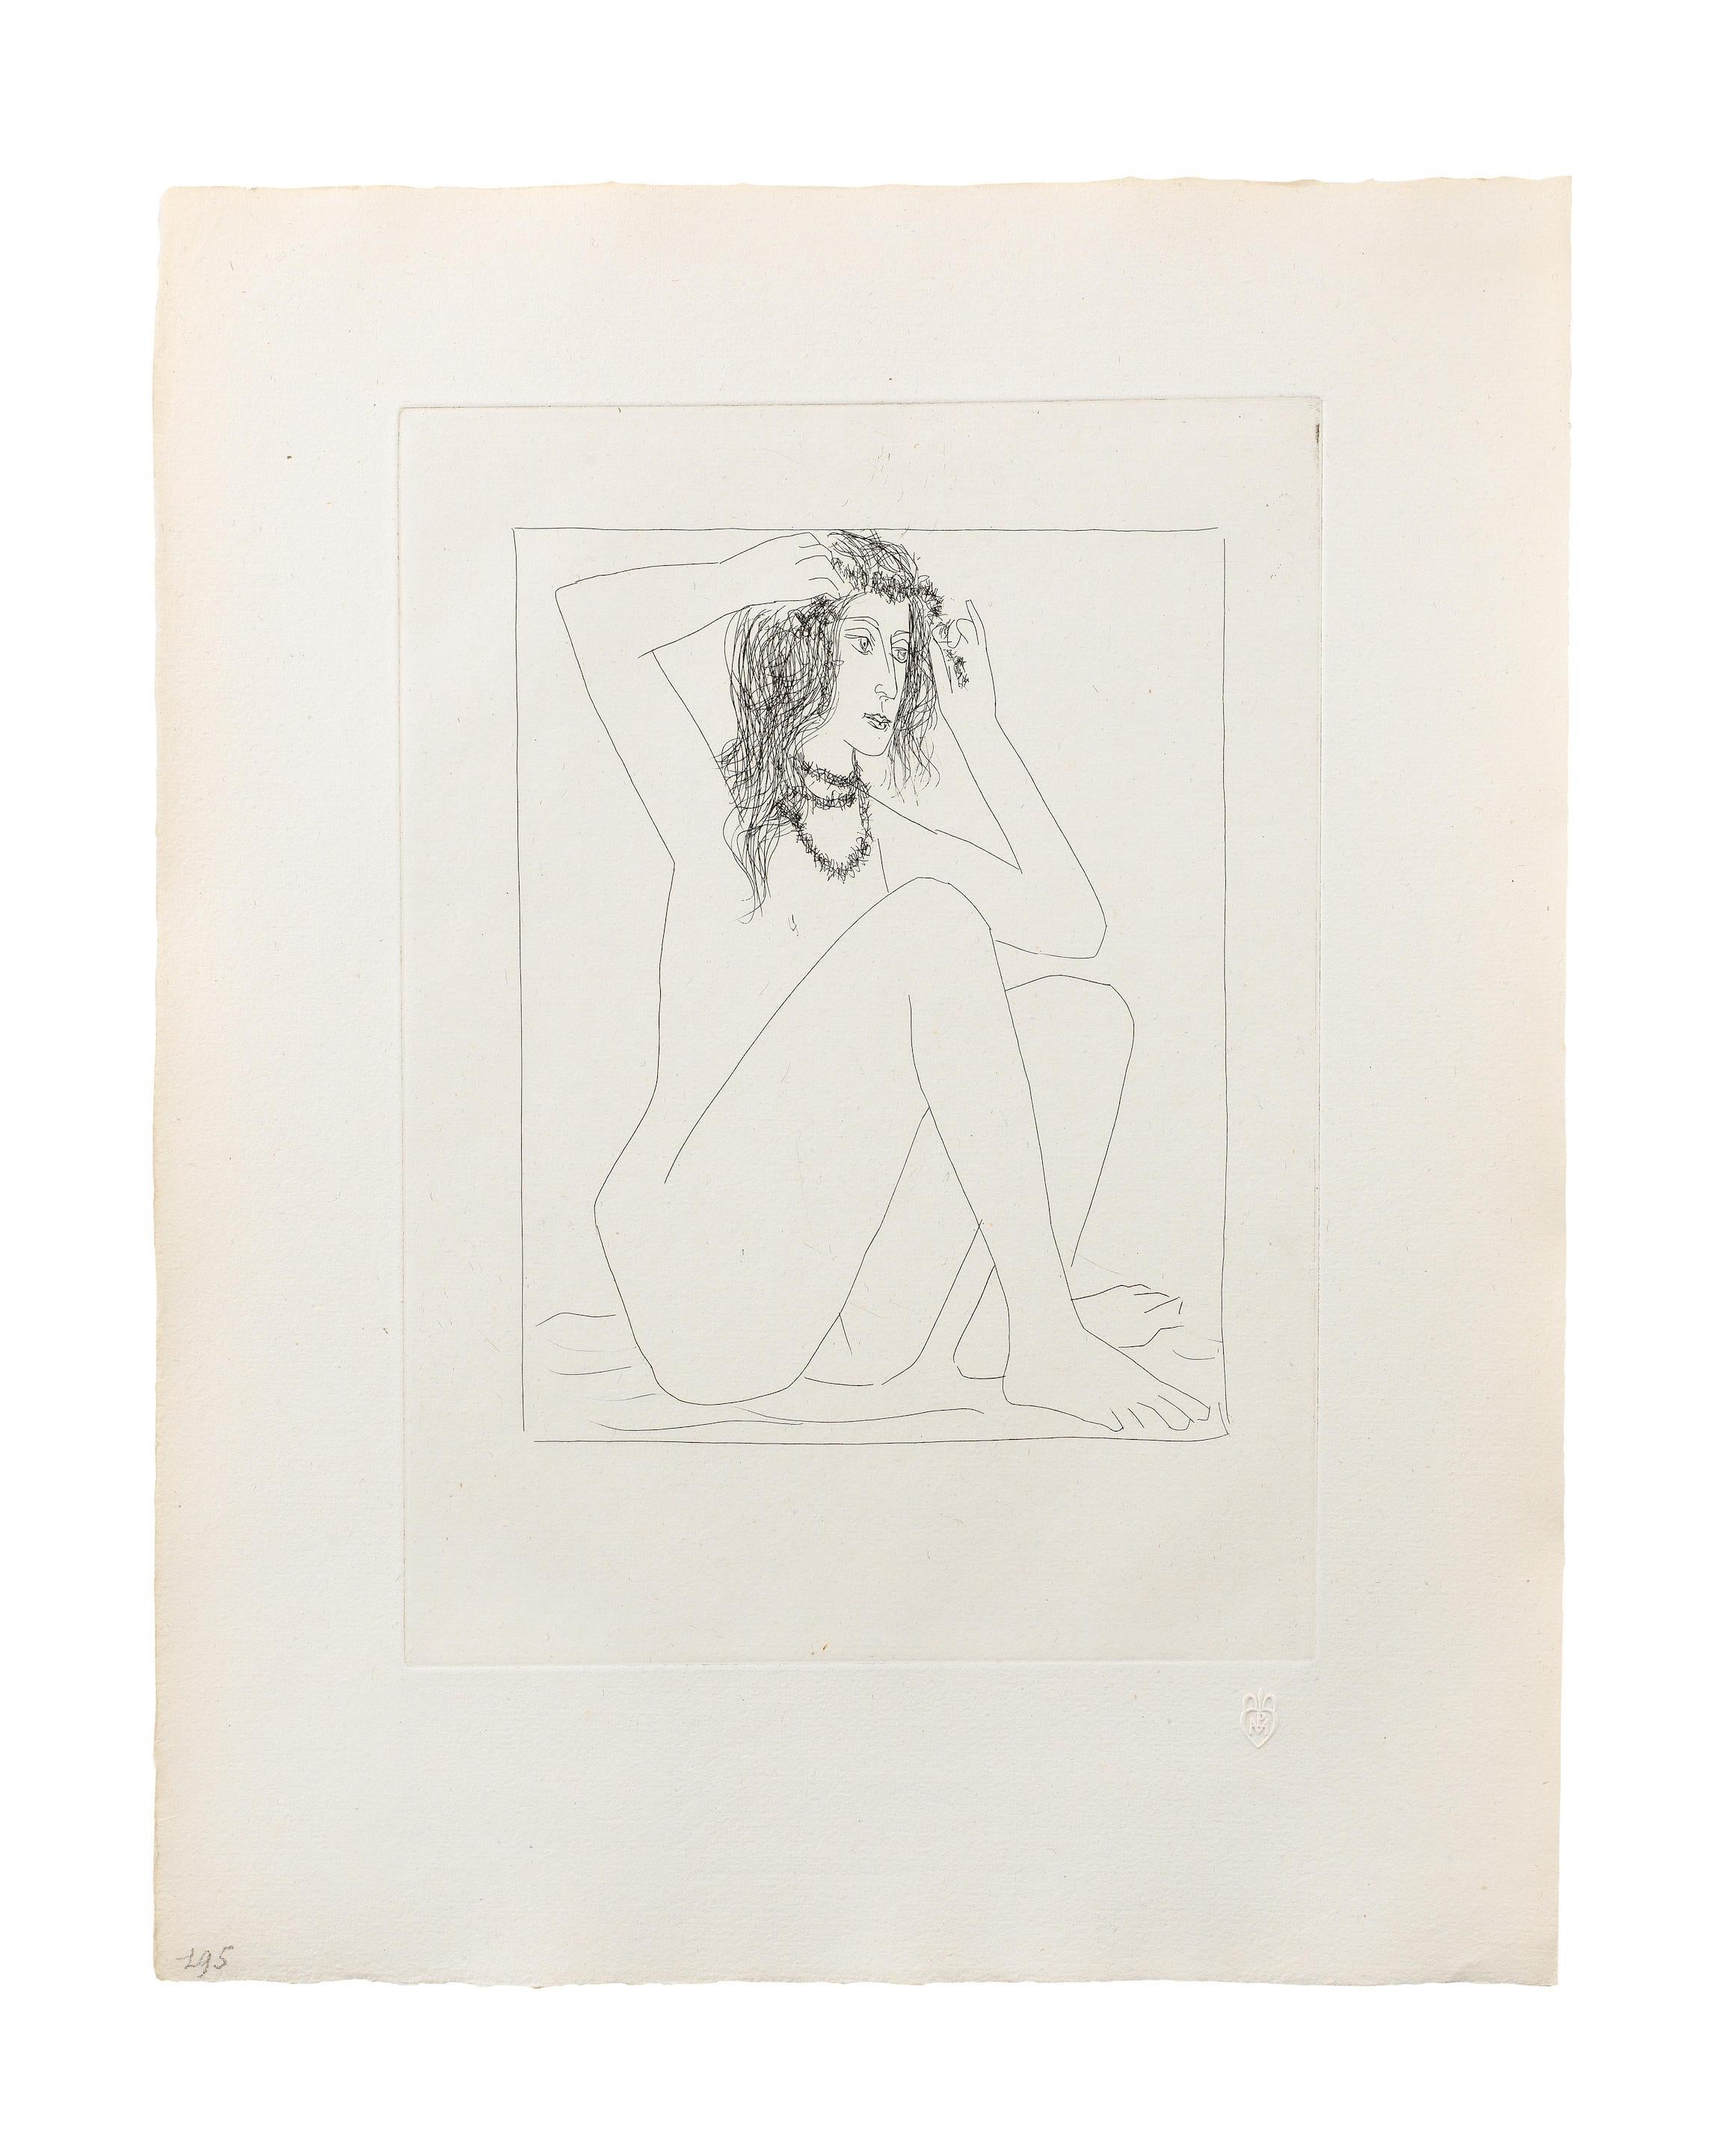 Femme nue se couronnant de fleurs - Print by Pablo Picasso